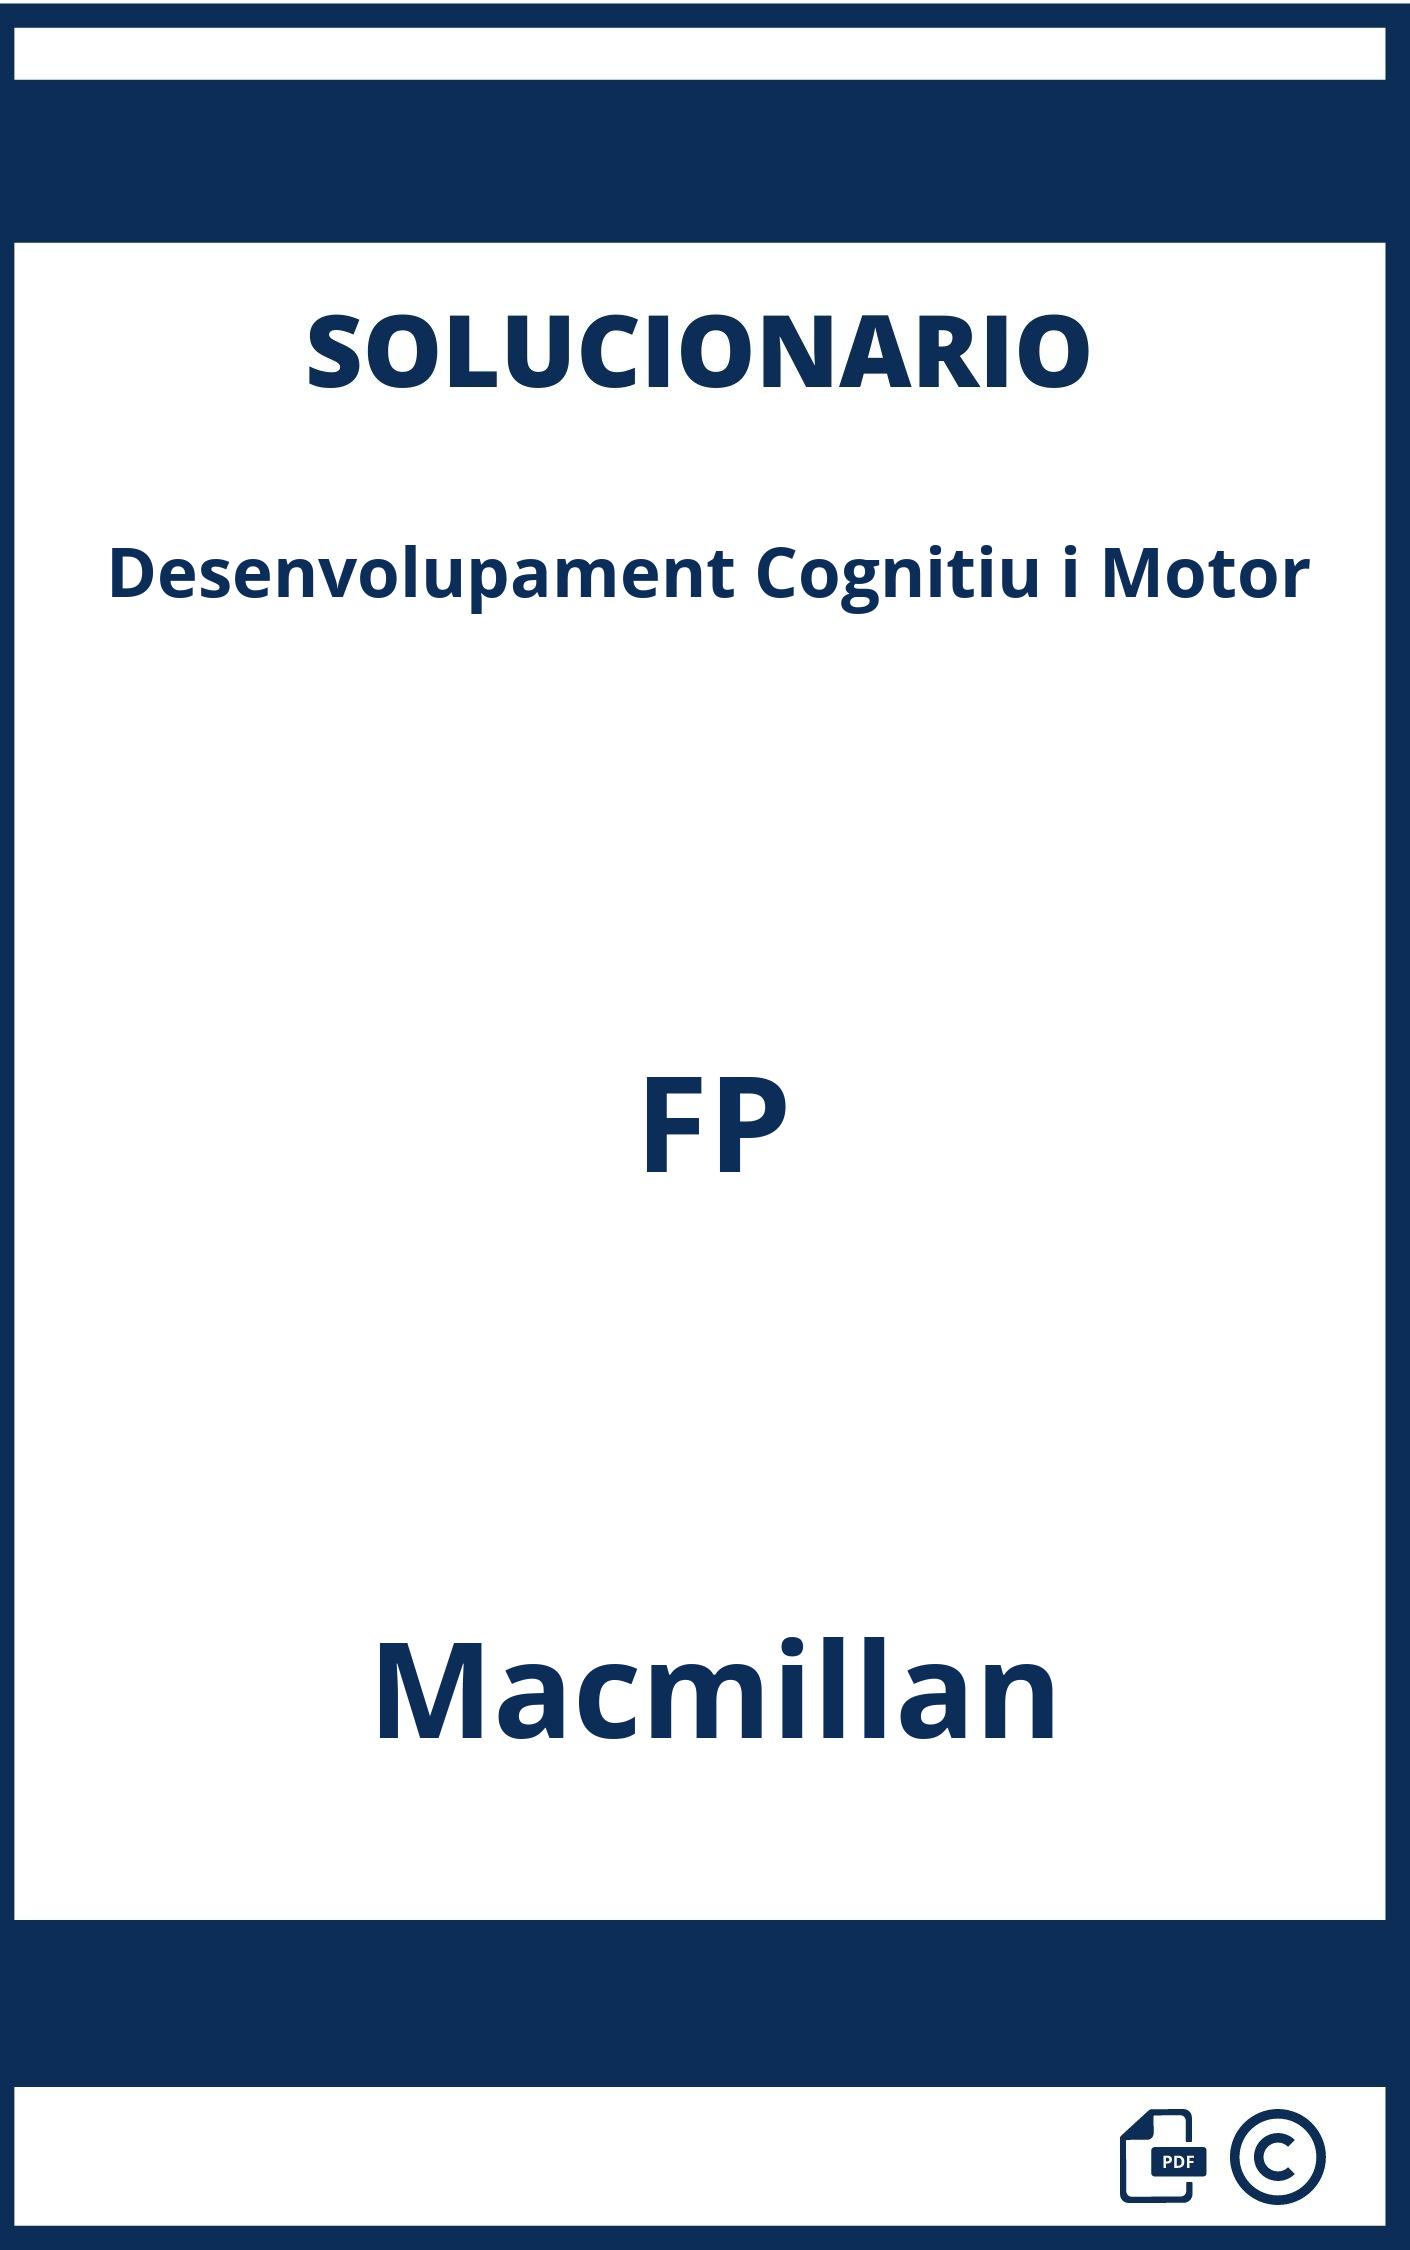 Solucionario Desenvolupament Cognitiu i Motor FP Macmillan